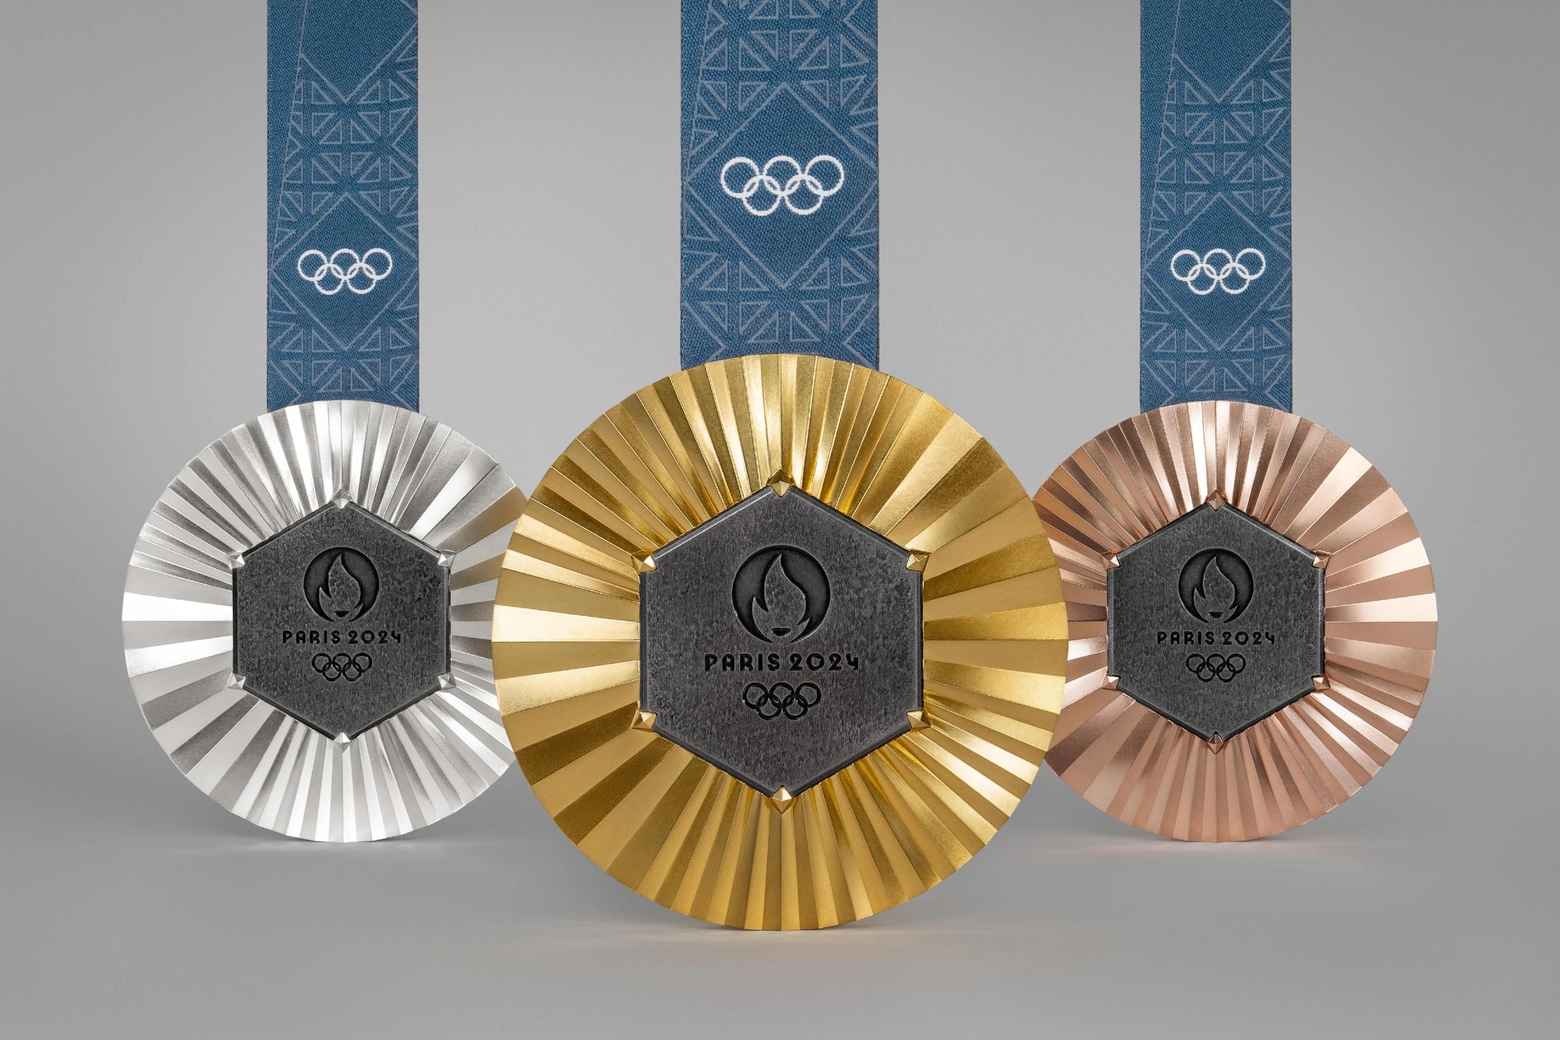 Le medaglie d'oro, d'argento e di bronzo alle Olimpiadi di Parigi 2024